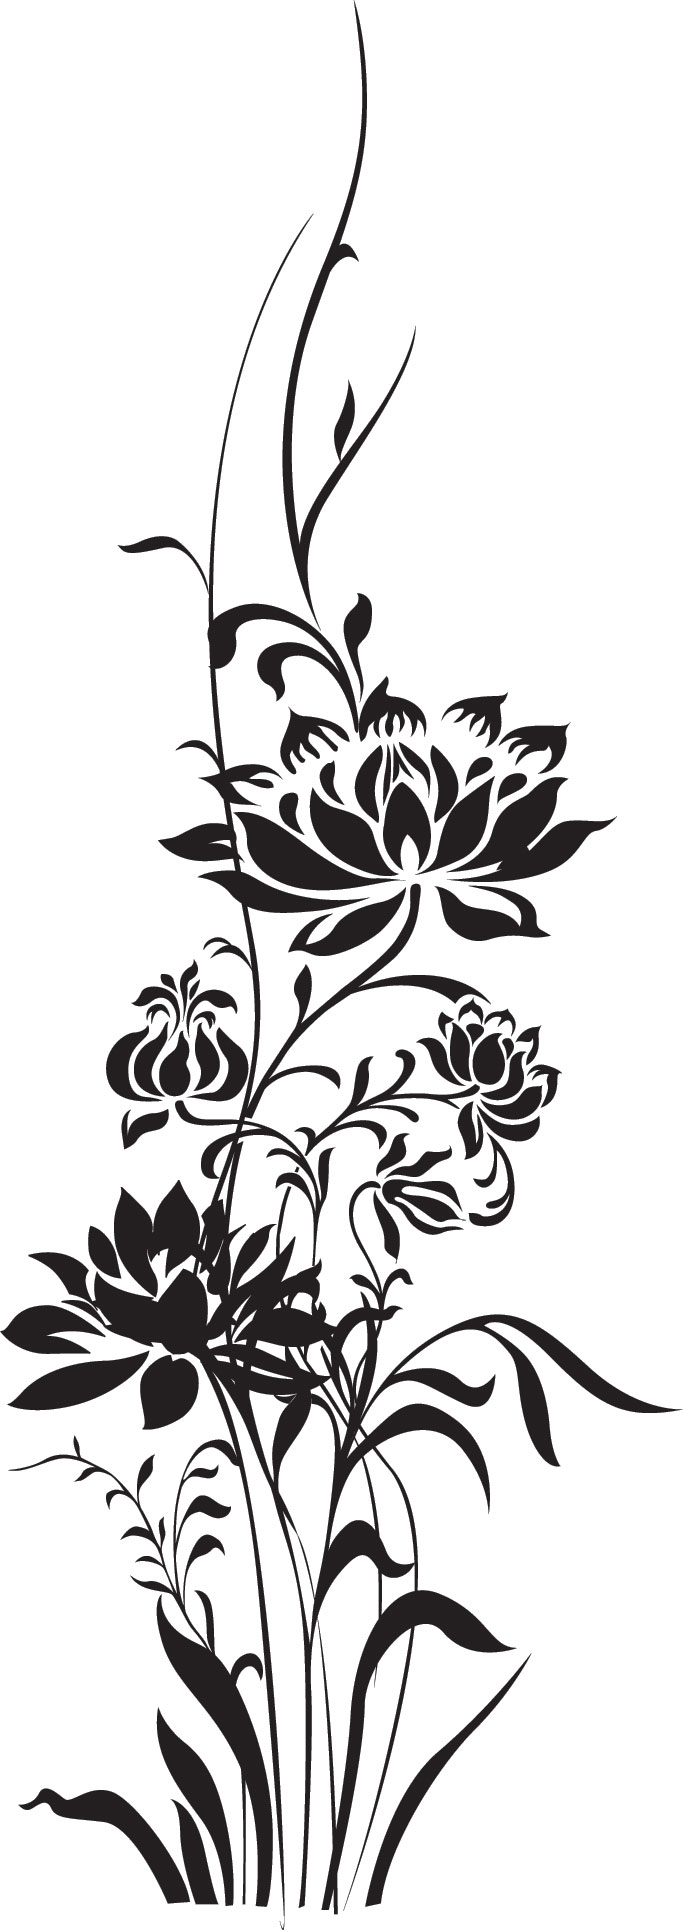 花のイラスト フリー素材 白黒 モノクロno 302 白黒 枝葉 縦長